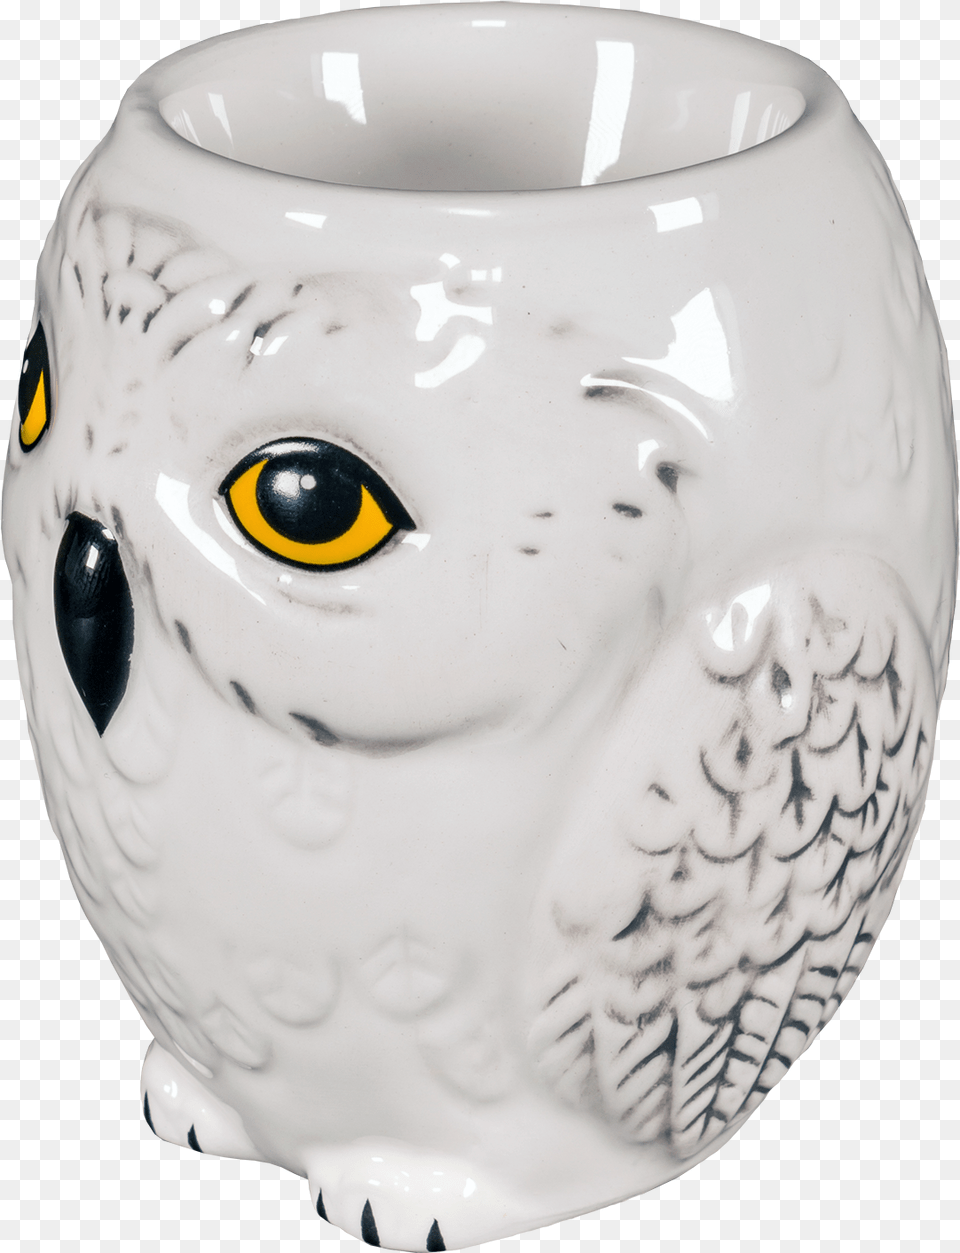 Harry Potter Egg Cups, Art, Pottery, Porcelain, Jar Free Png Download